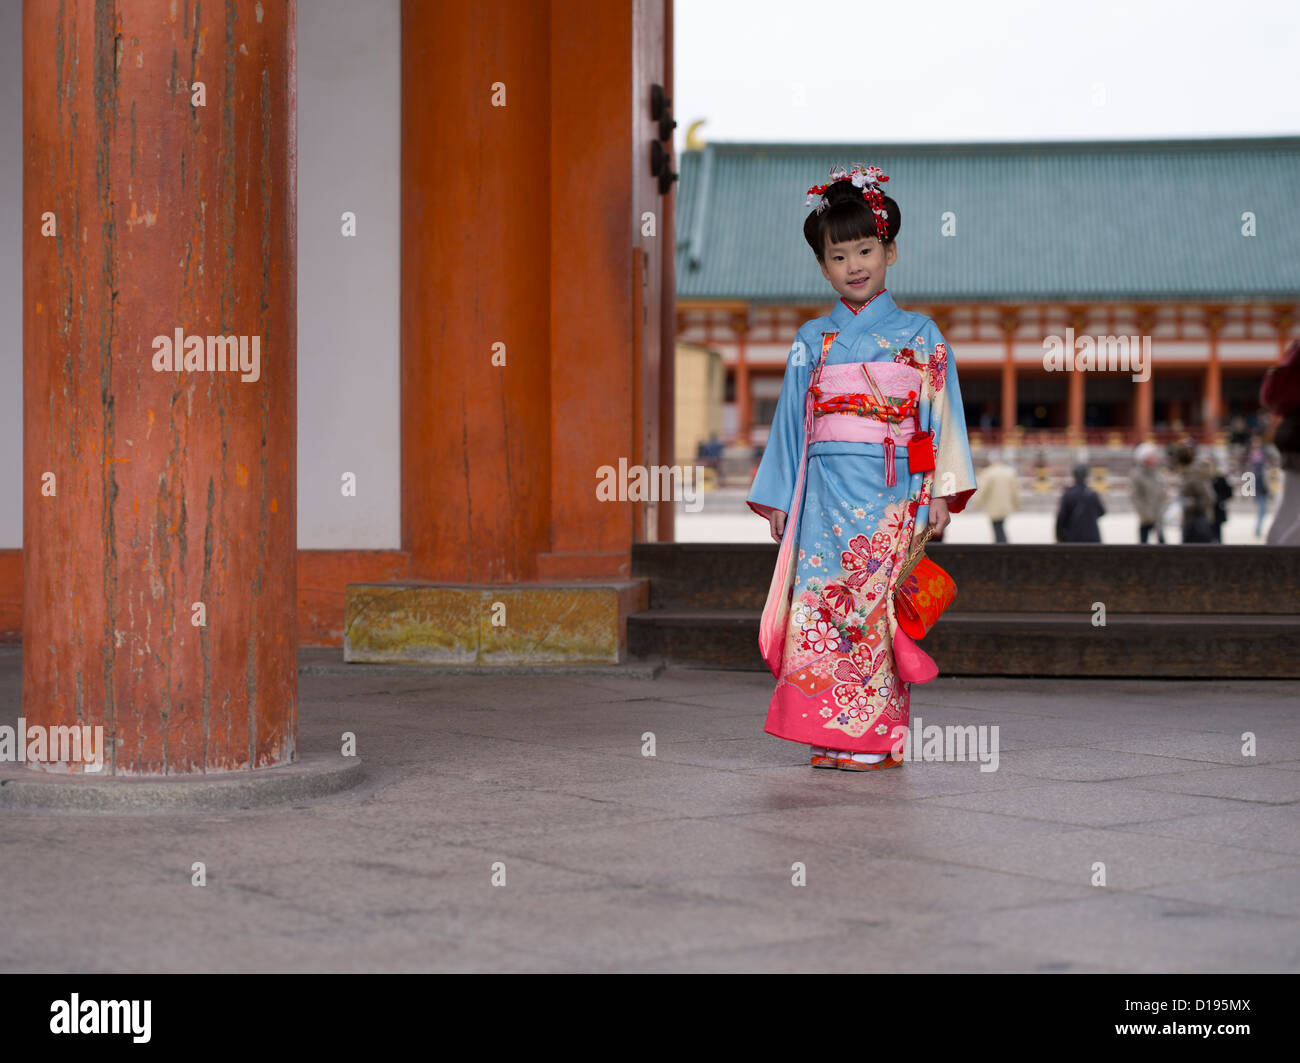 Junges japanisches Mädchen im Kimono und Obi besucht einen Schrein in Kyoto Japan. Kinder im Alter von 7, 5 und 3 Besuch Schreine an ihrem Geburtstag. Stockfoto